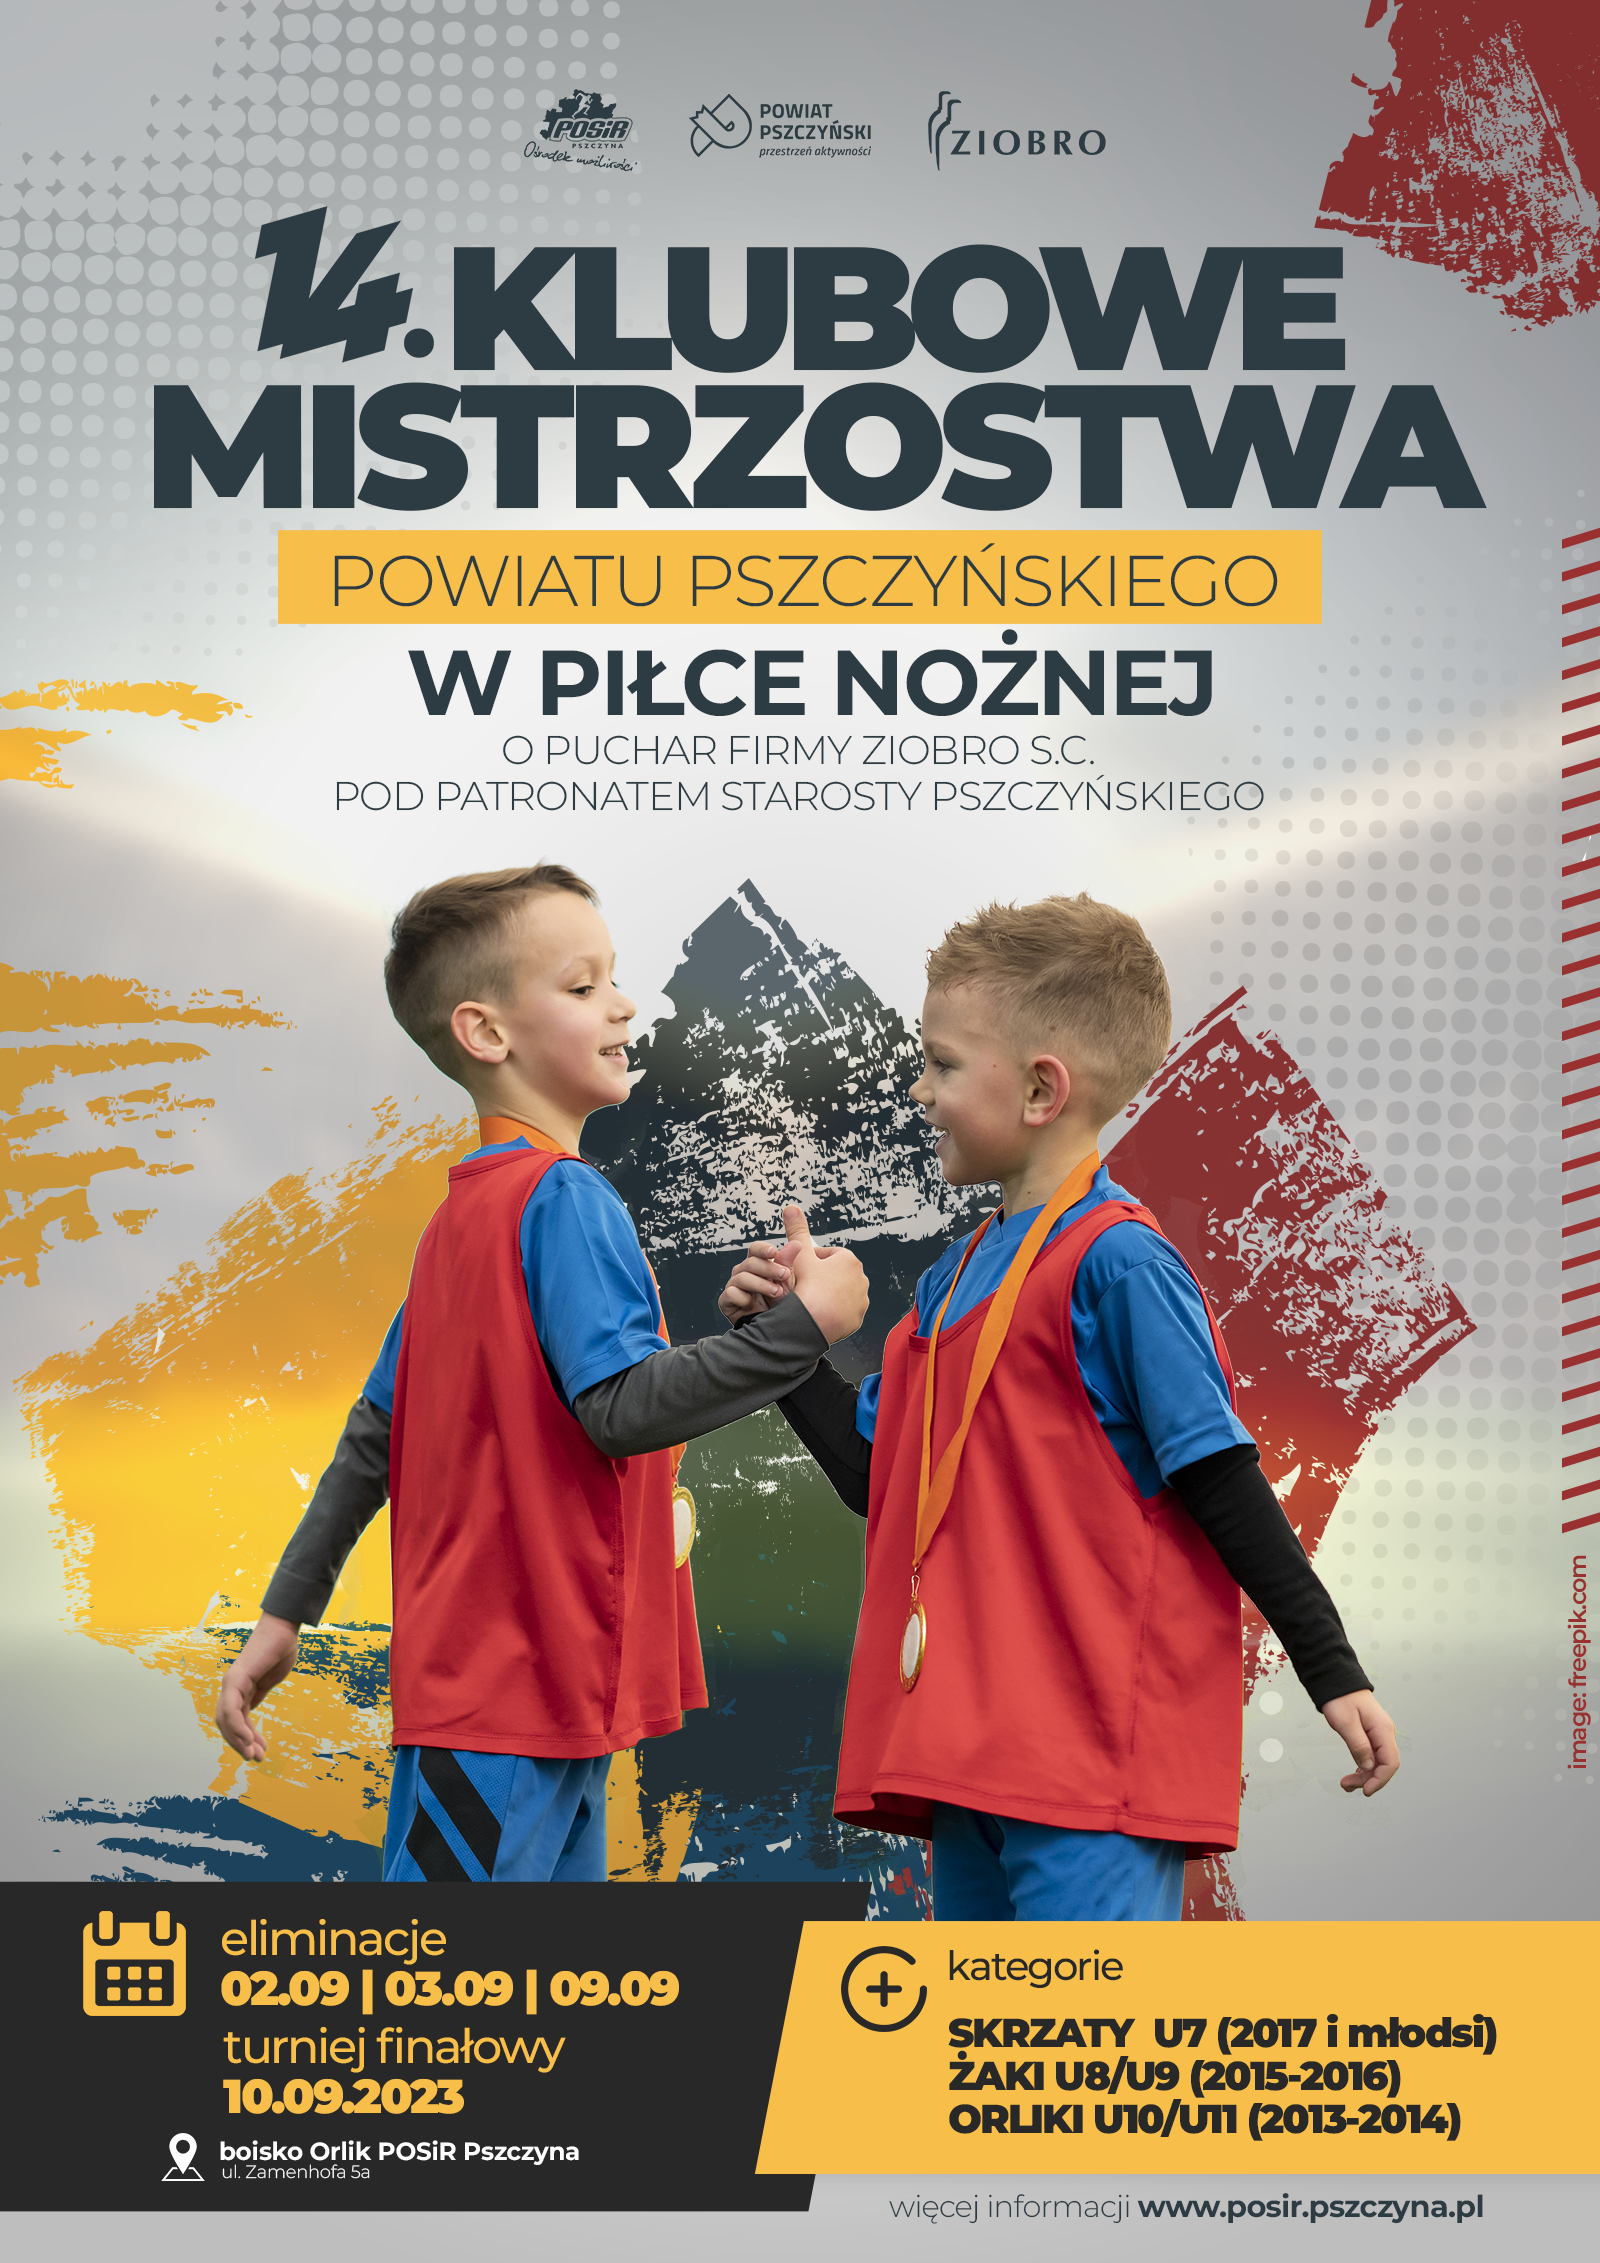 Plakat informujący o 14 Klubowych Mistrzostwach Powiatu Pszczyńskiego w Piłce Nożnej. Plakat przedstawia dwóch młodych piłkarzy oraz informacje na temat mistrzostw